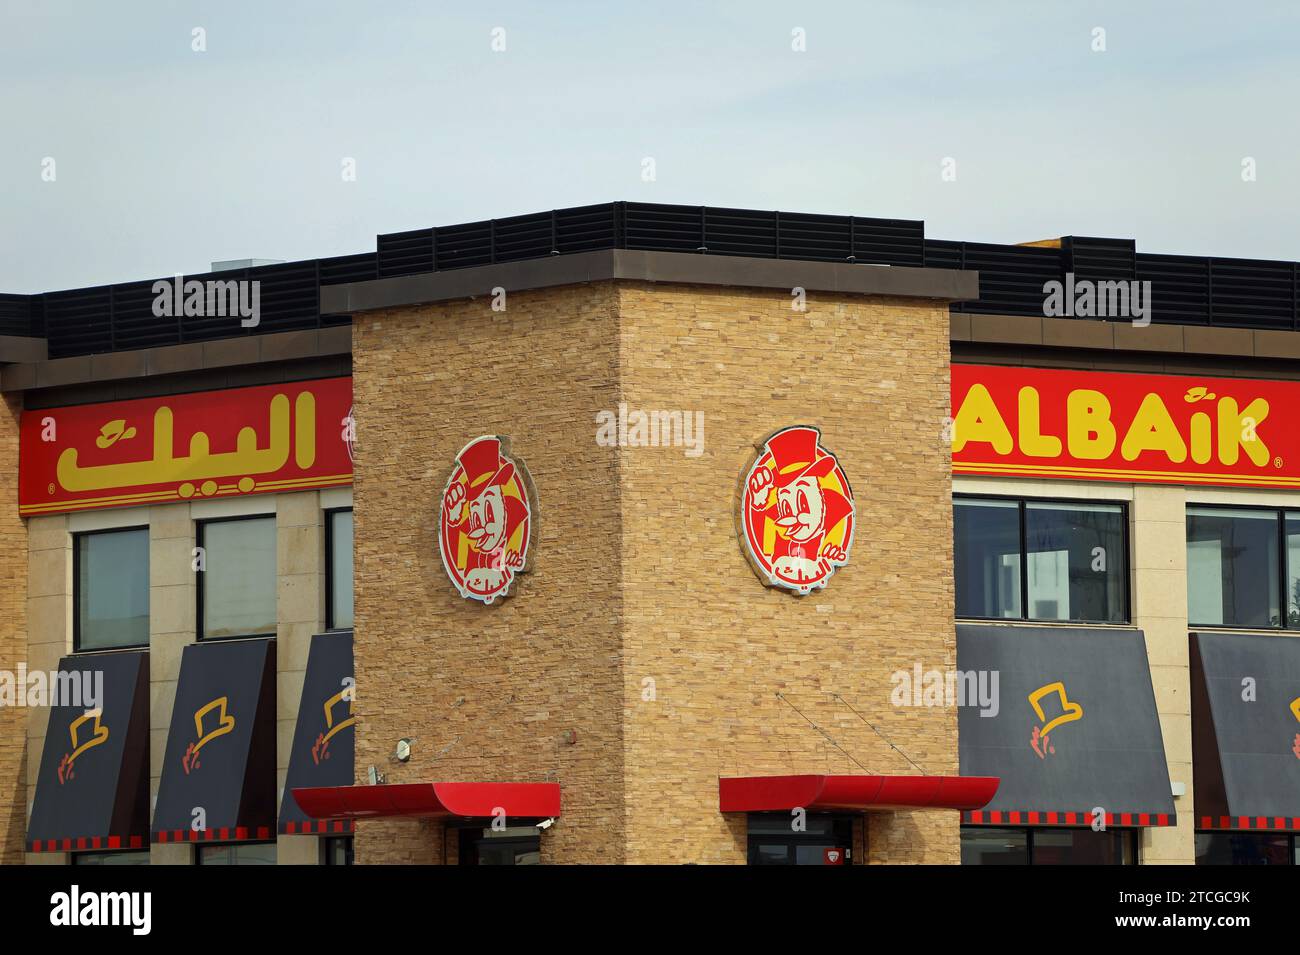 Albaik fast food restaurant in Saudi Arabia Stock Photo